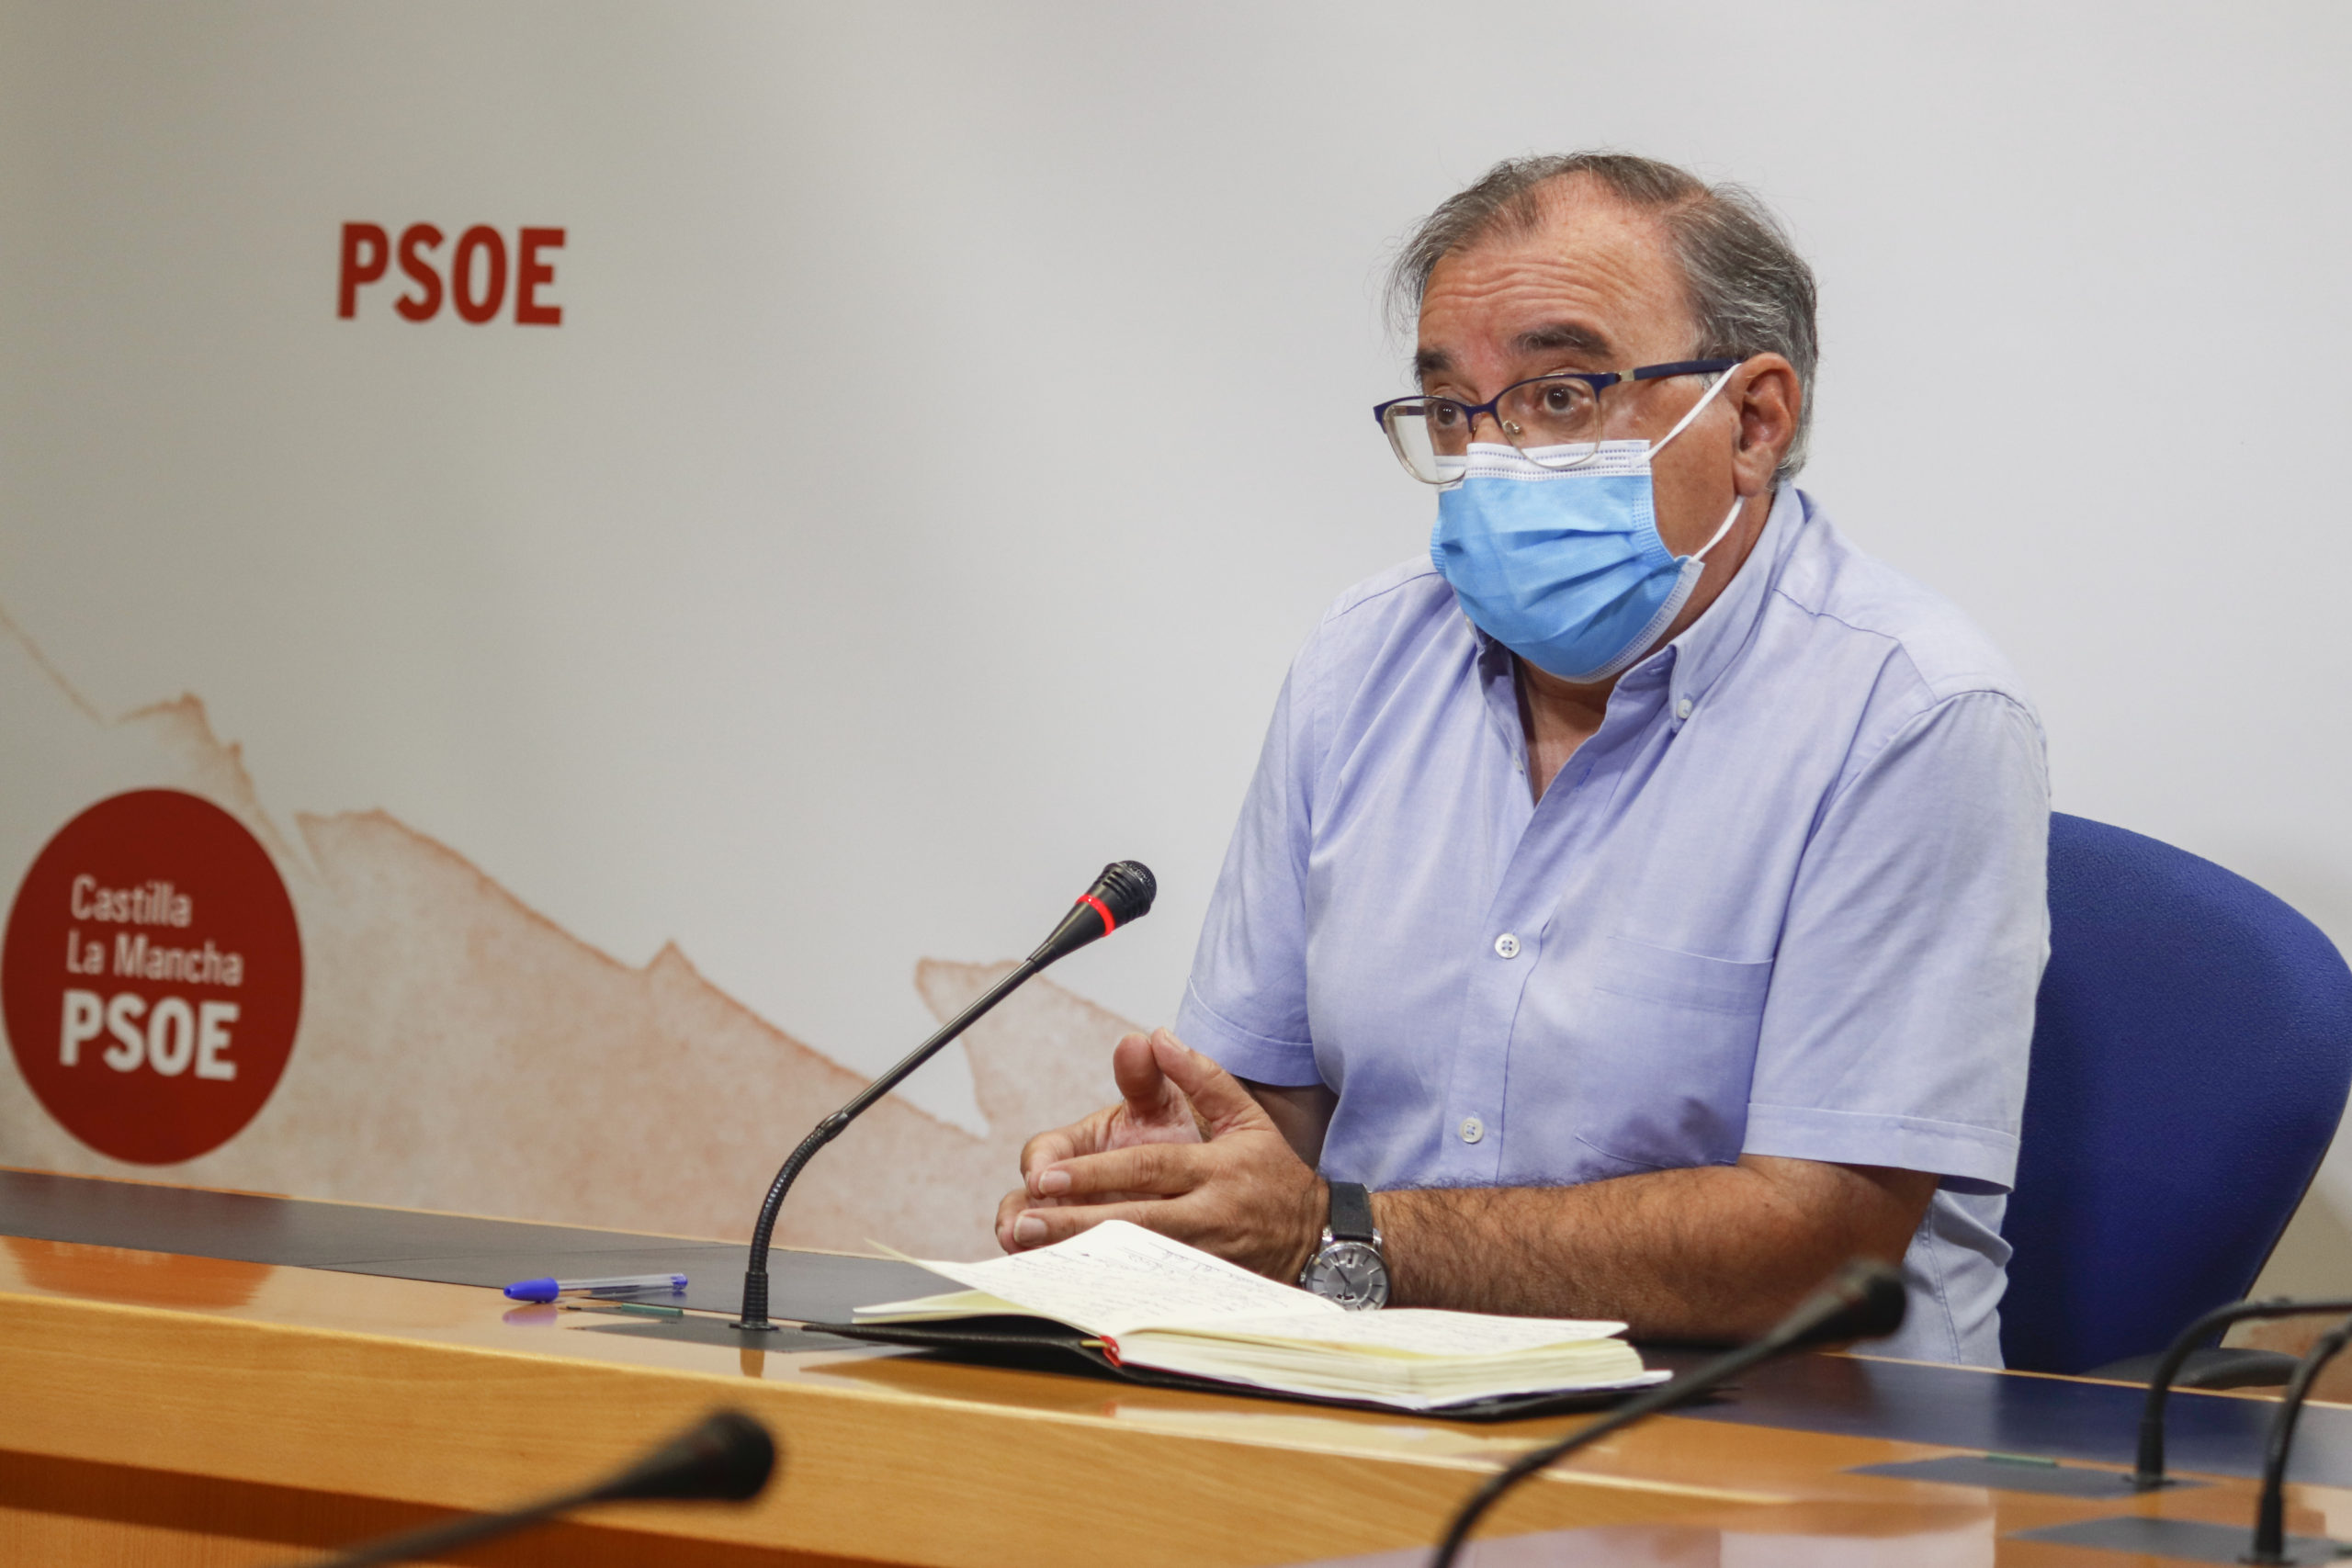 Mora pide a Núñez “seriedad” y que deje las “ocurrencias” ante las dificultades de la COVID-19